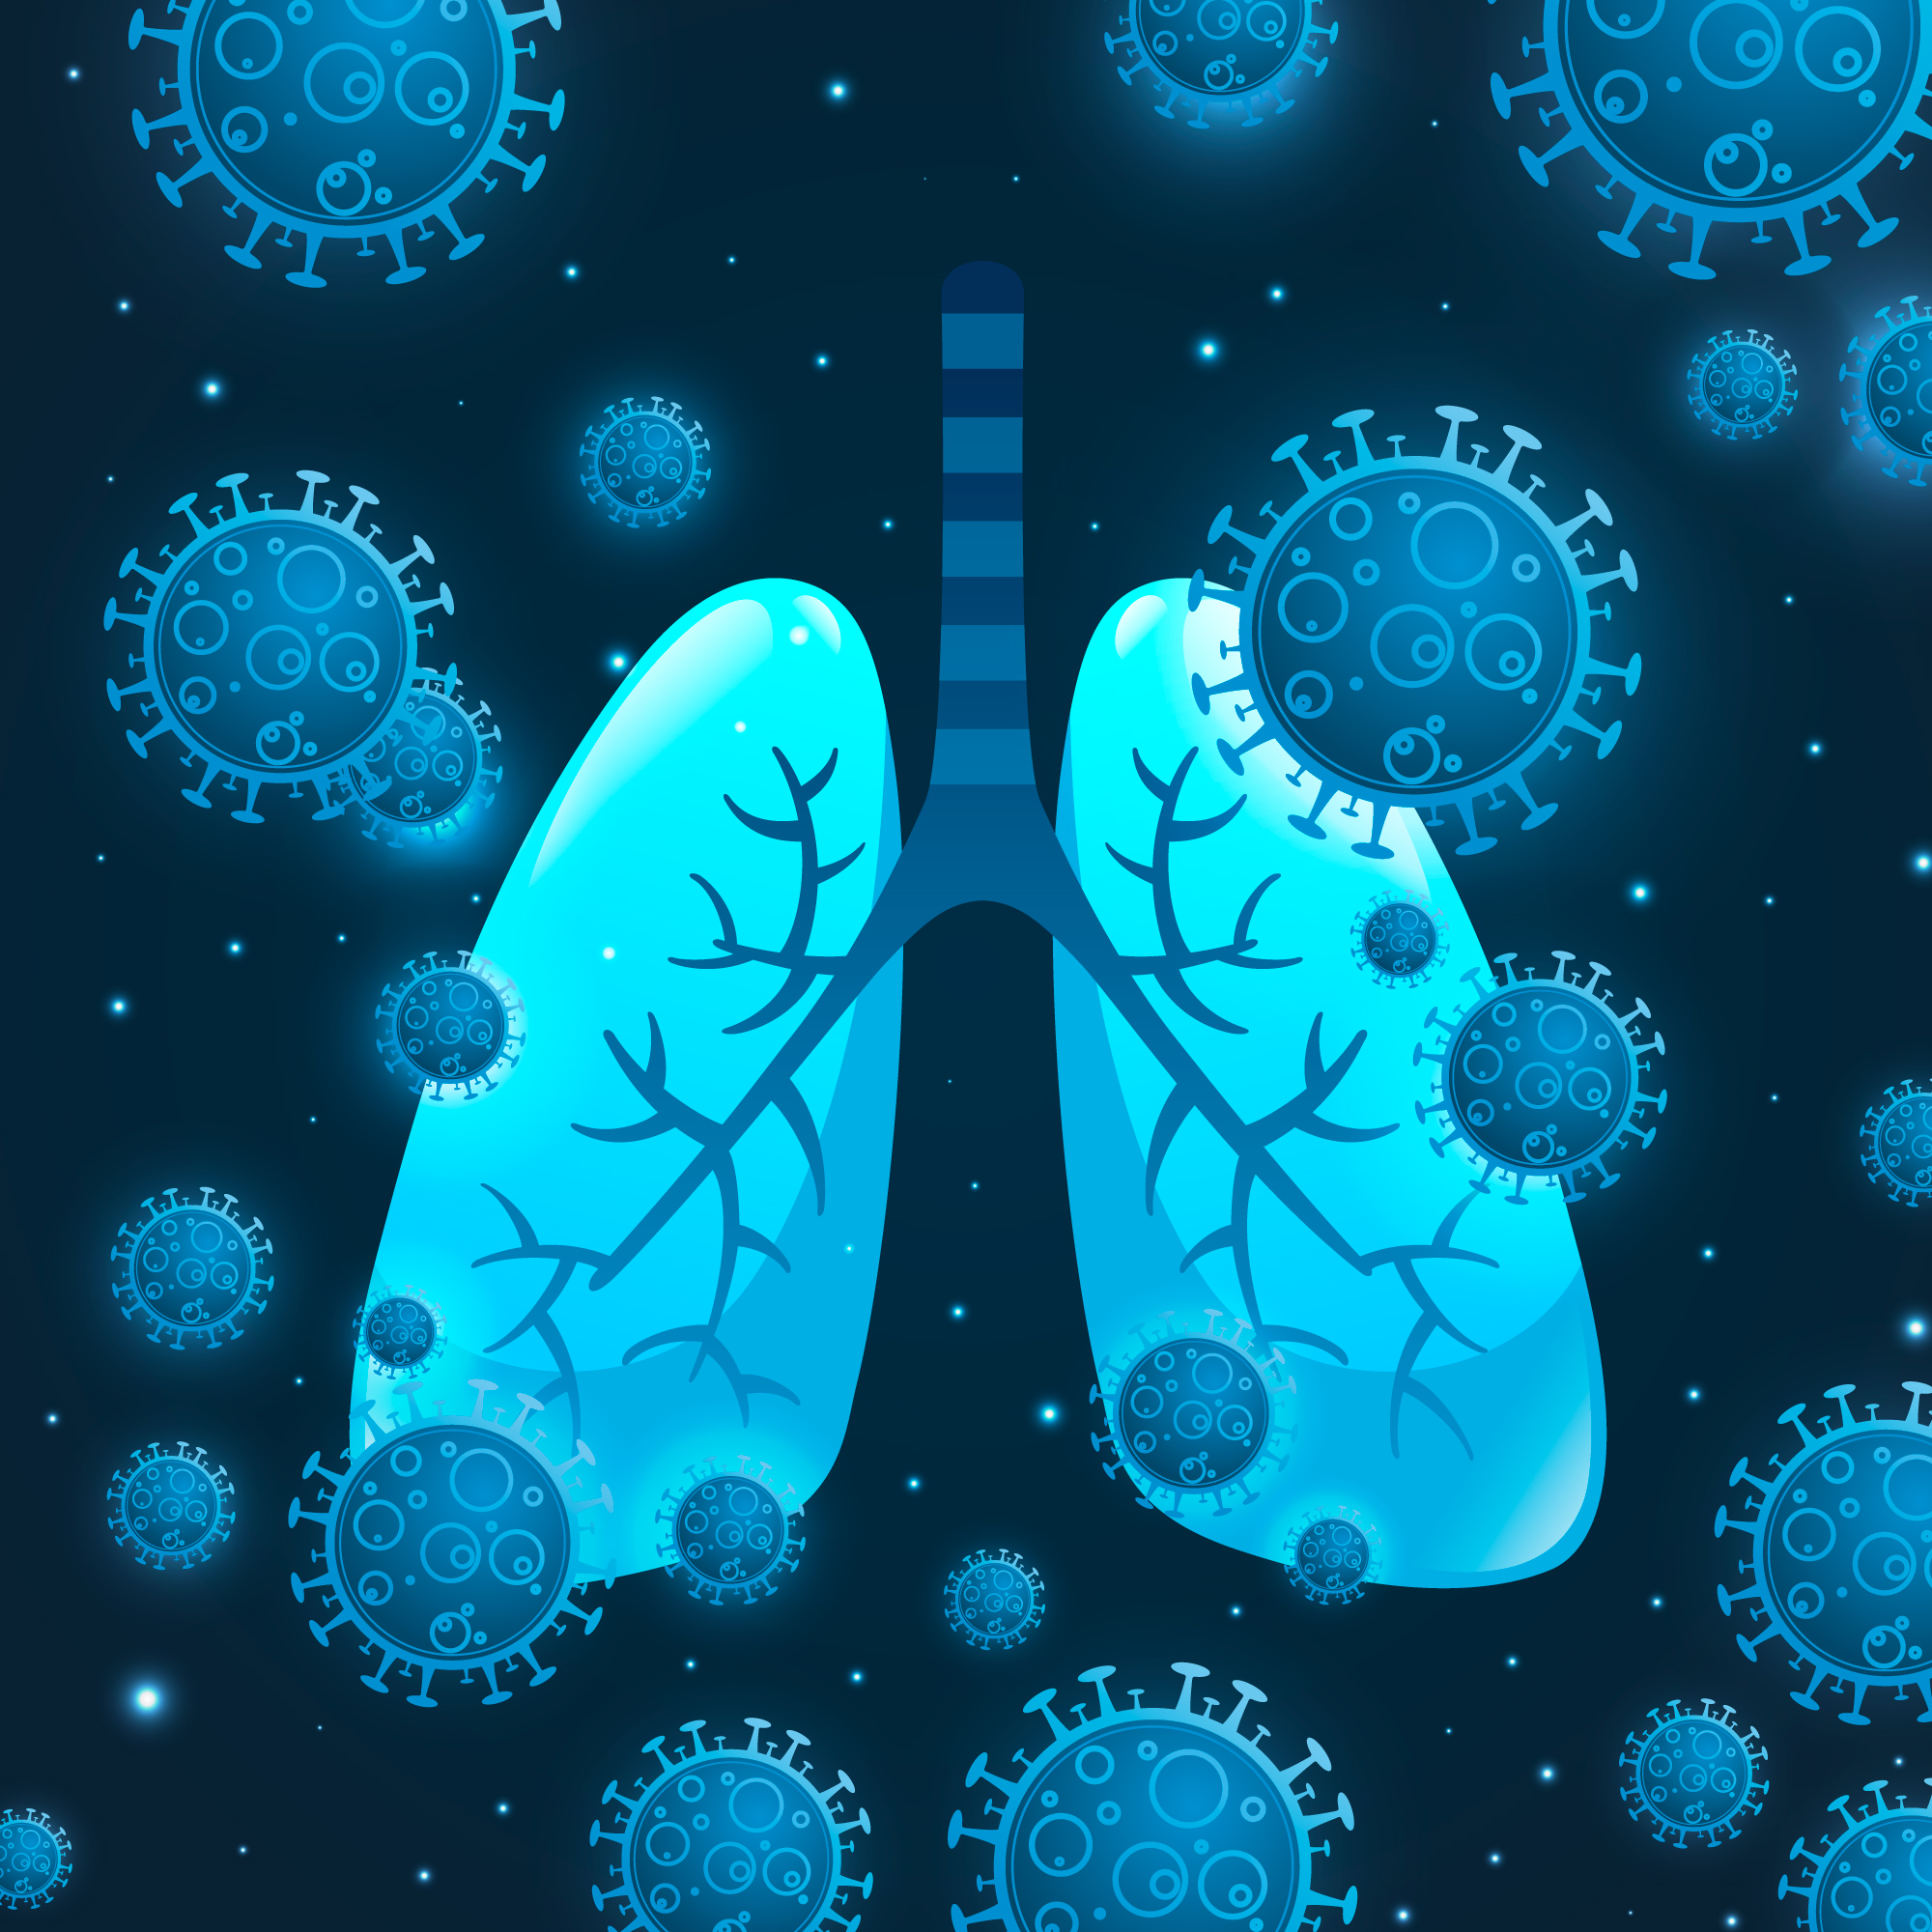 La surpopulation cellulaire dans les voies respiratoires liée à l’asthme chronique - Image